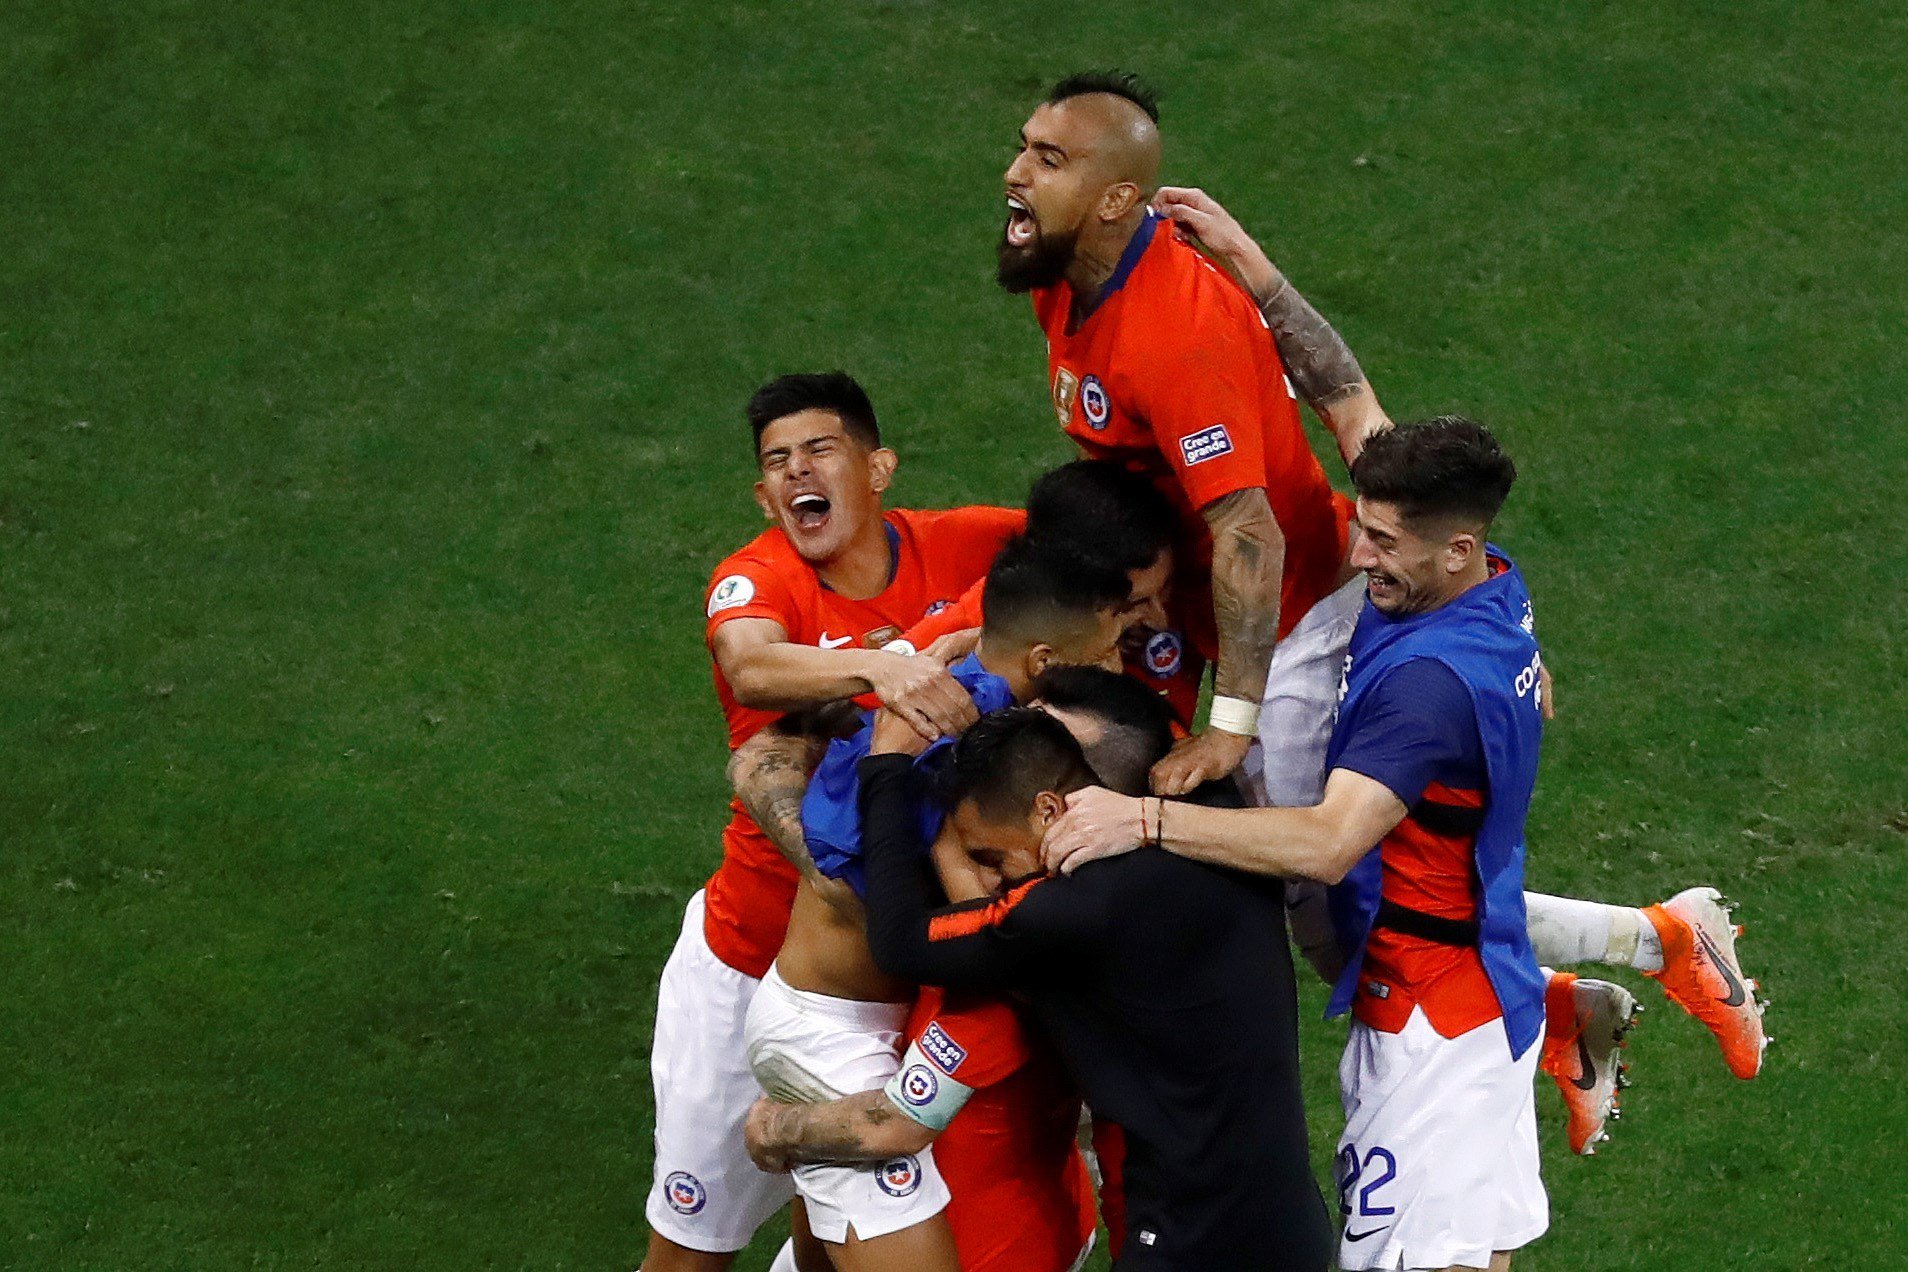 Chile castiga a Colombia en la tanda de penaltis y ya está en semifinales (0-0)